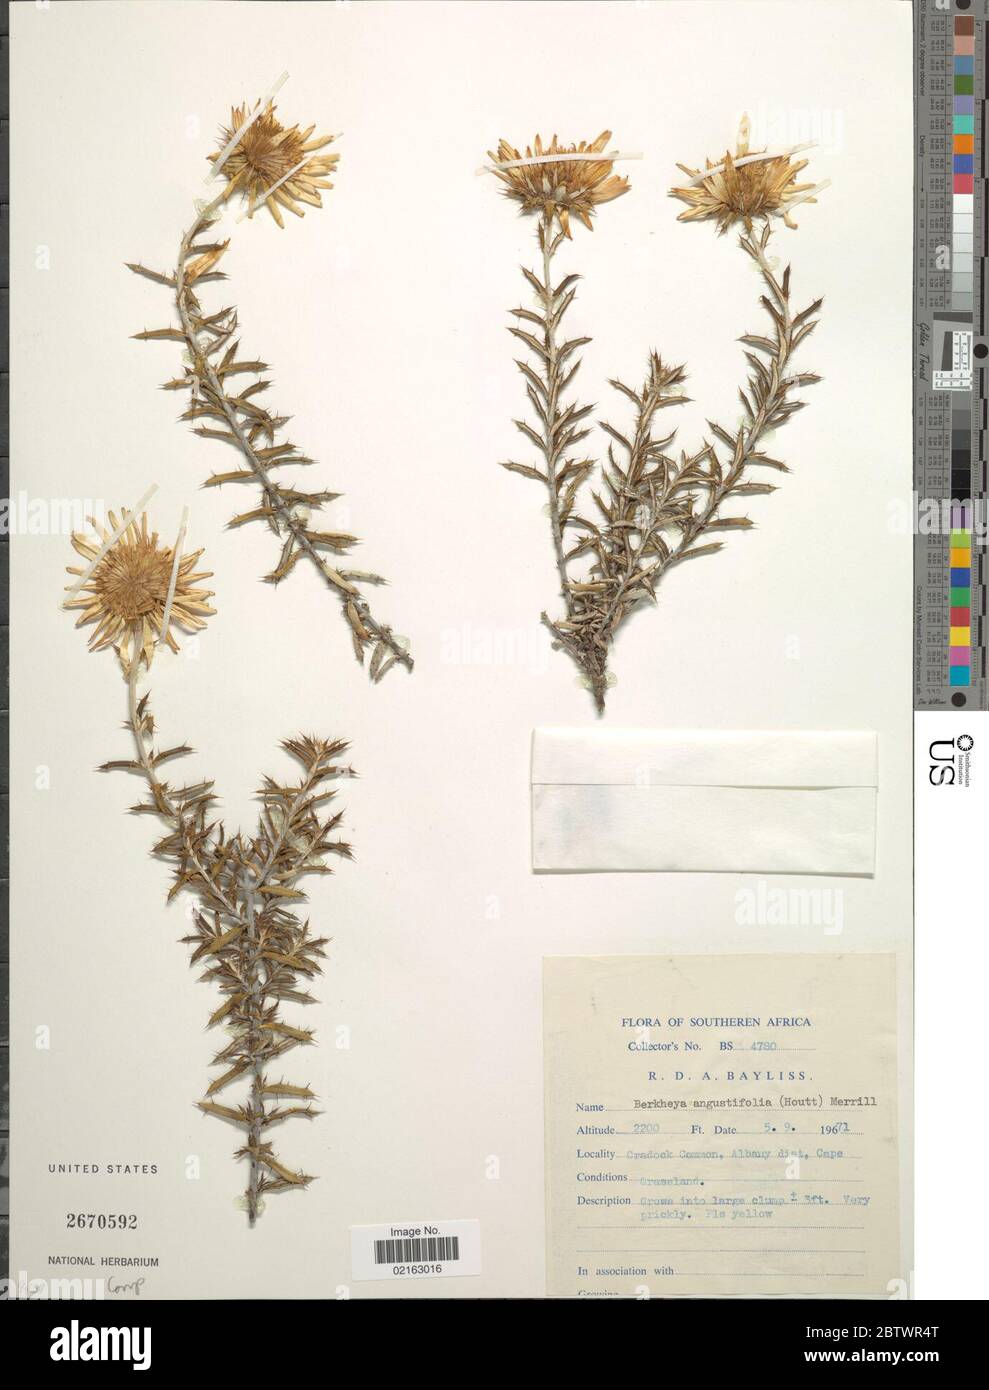 Berkheya angustifolia Houtt Merr. Stock Photo